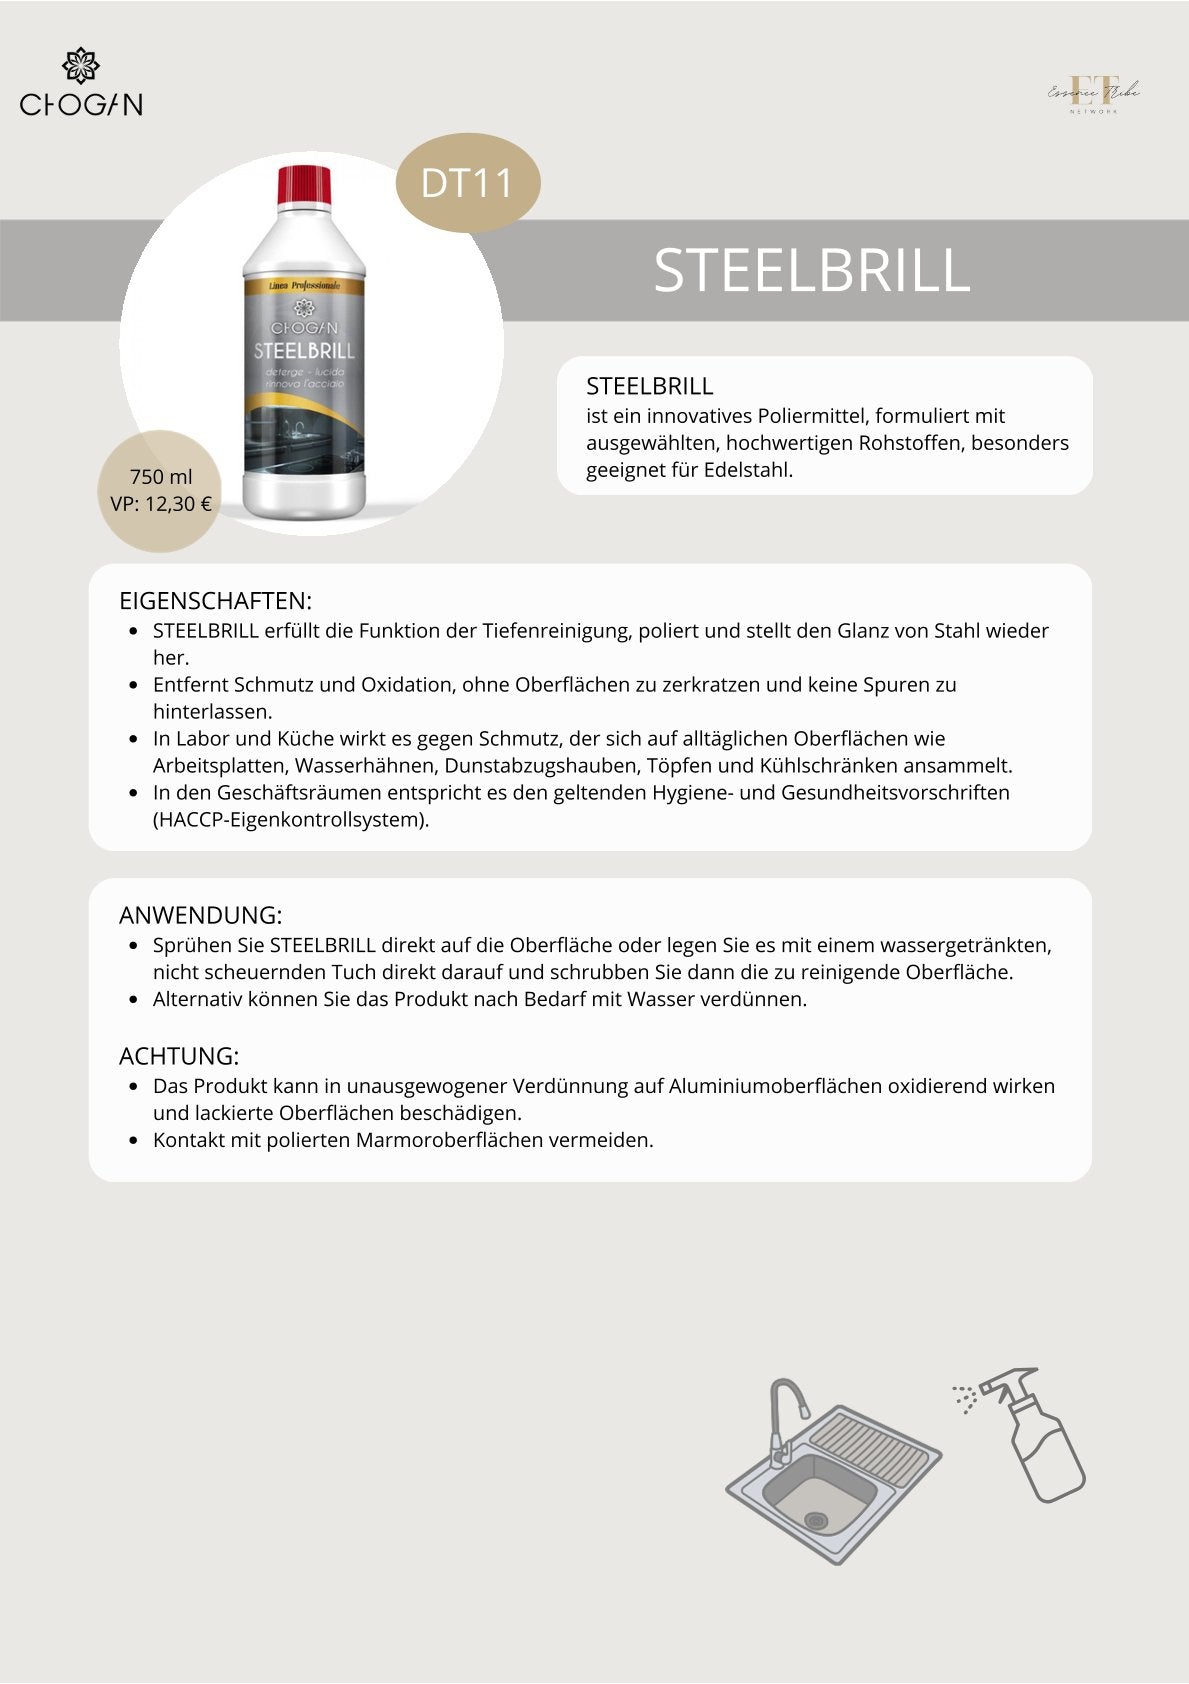 Steel Brill – Edelstahlreiniger Für Strahlenden Glanz